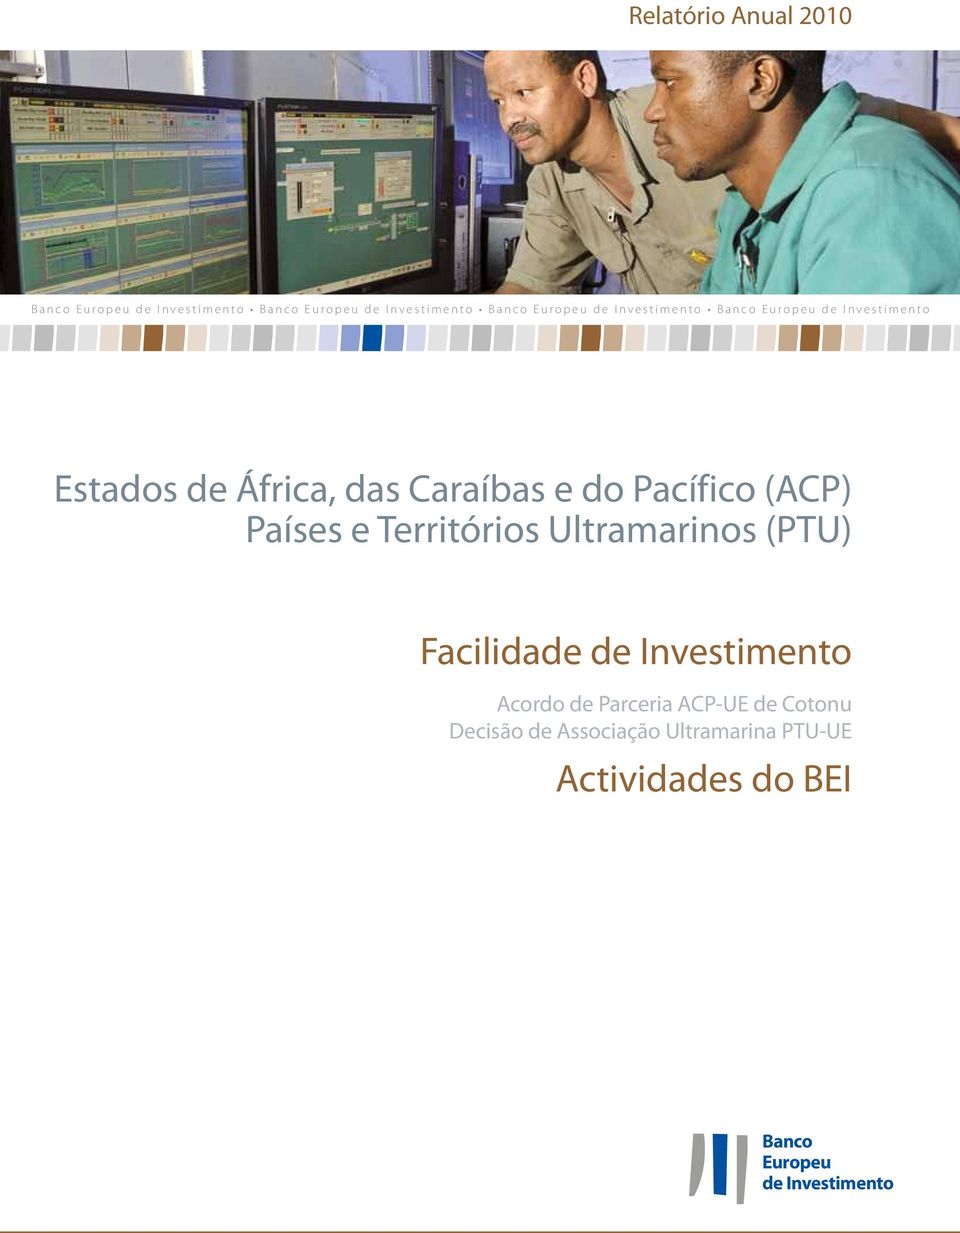 (ACP) Países e Territórios Ultramarinos (PTU) Facilidade de Investimento Acordo de Parceria